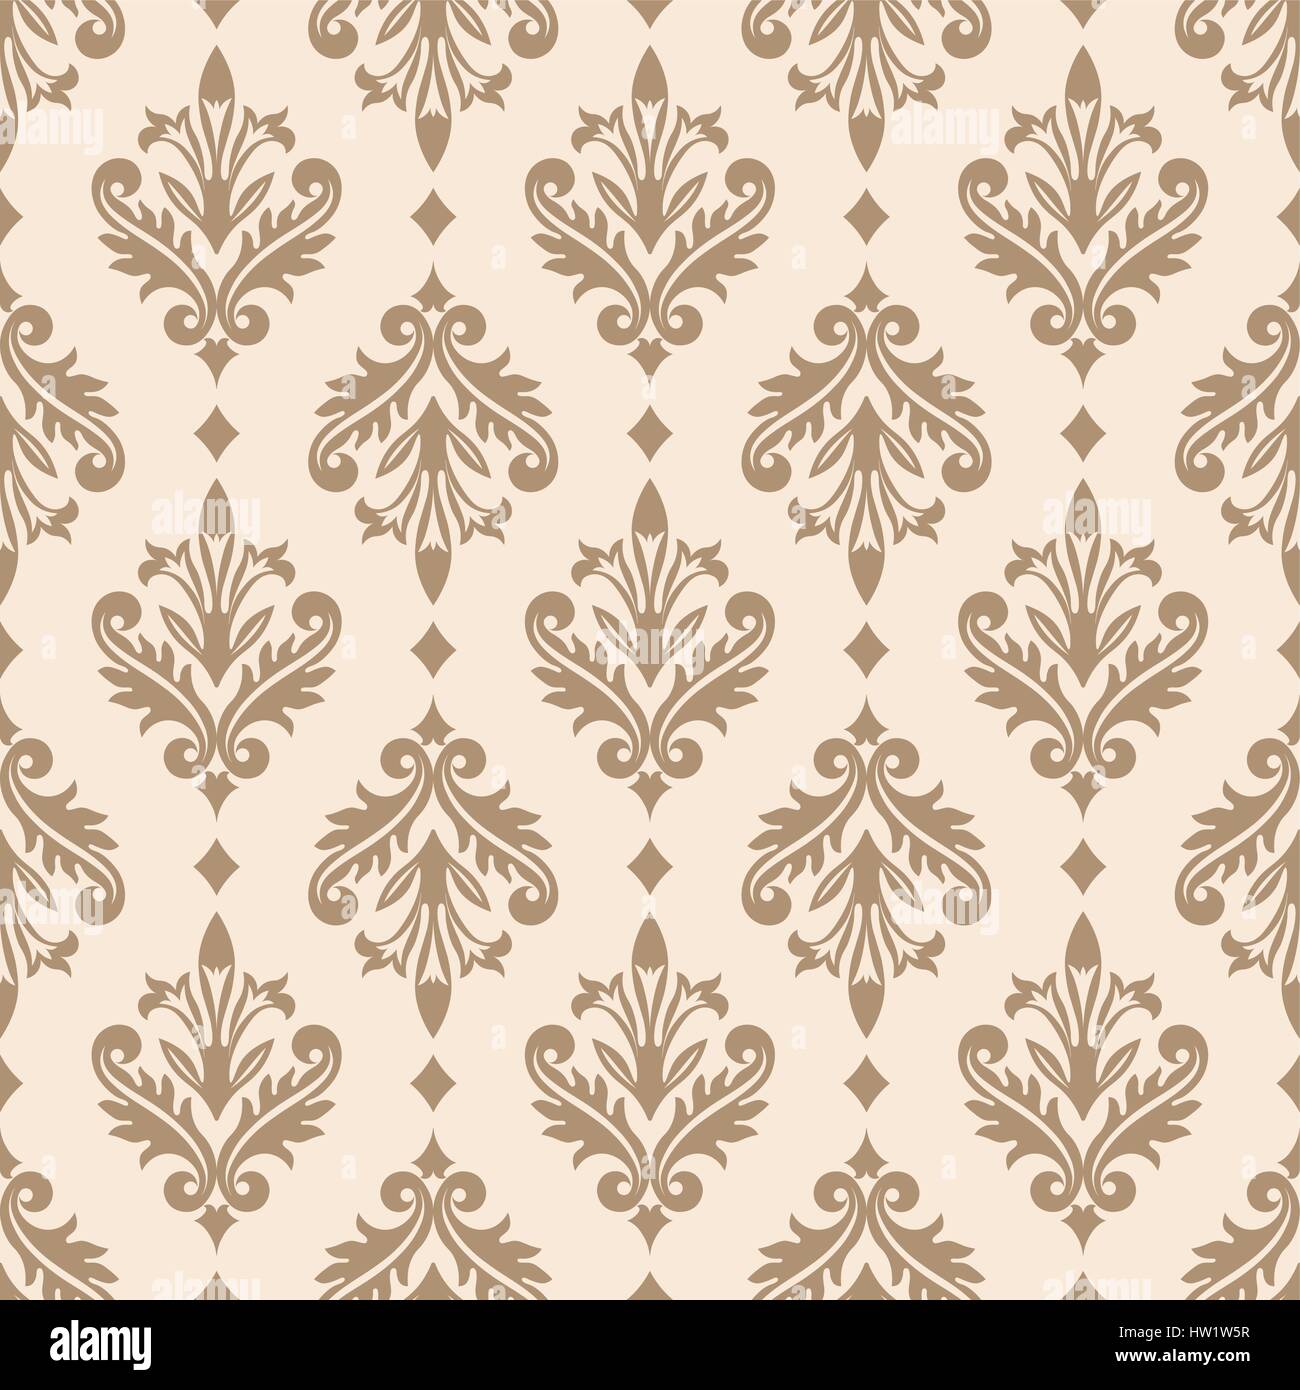 Vector seamless pattern. Il lusso elegante texture di stile barocco. Pattern può essere utilizzata come sfondo, sfondo, involucro, pagina compilate, elemento di ornat Illustrazione Vettoriale